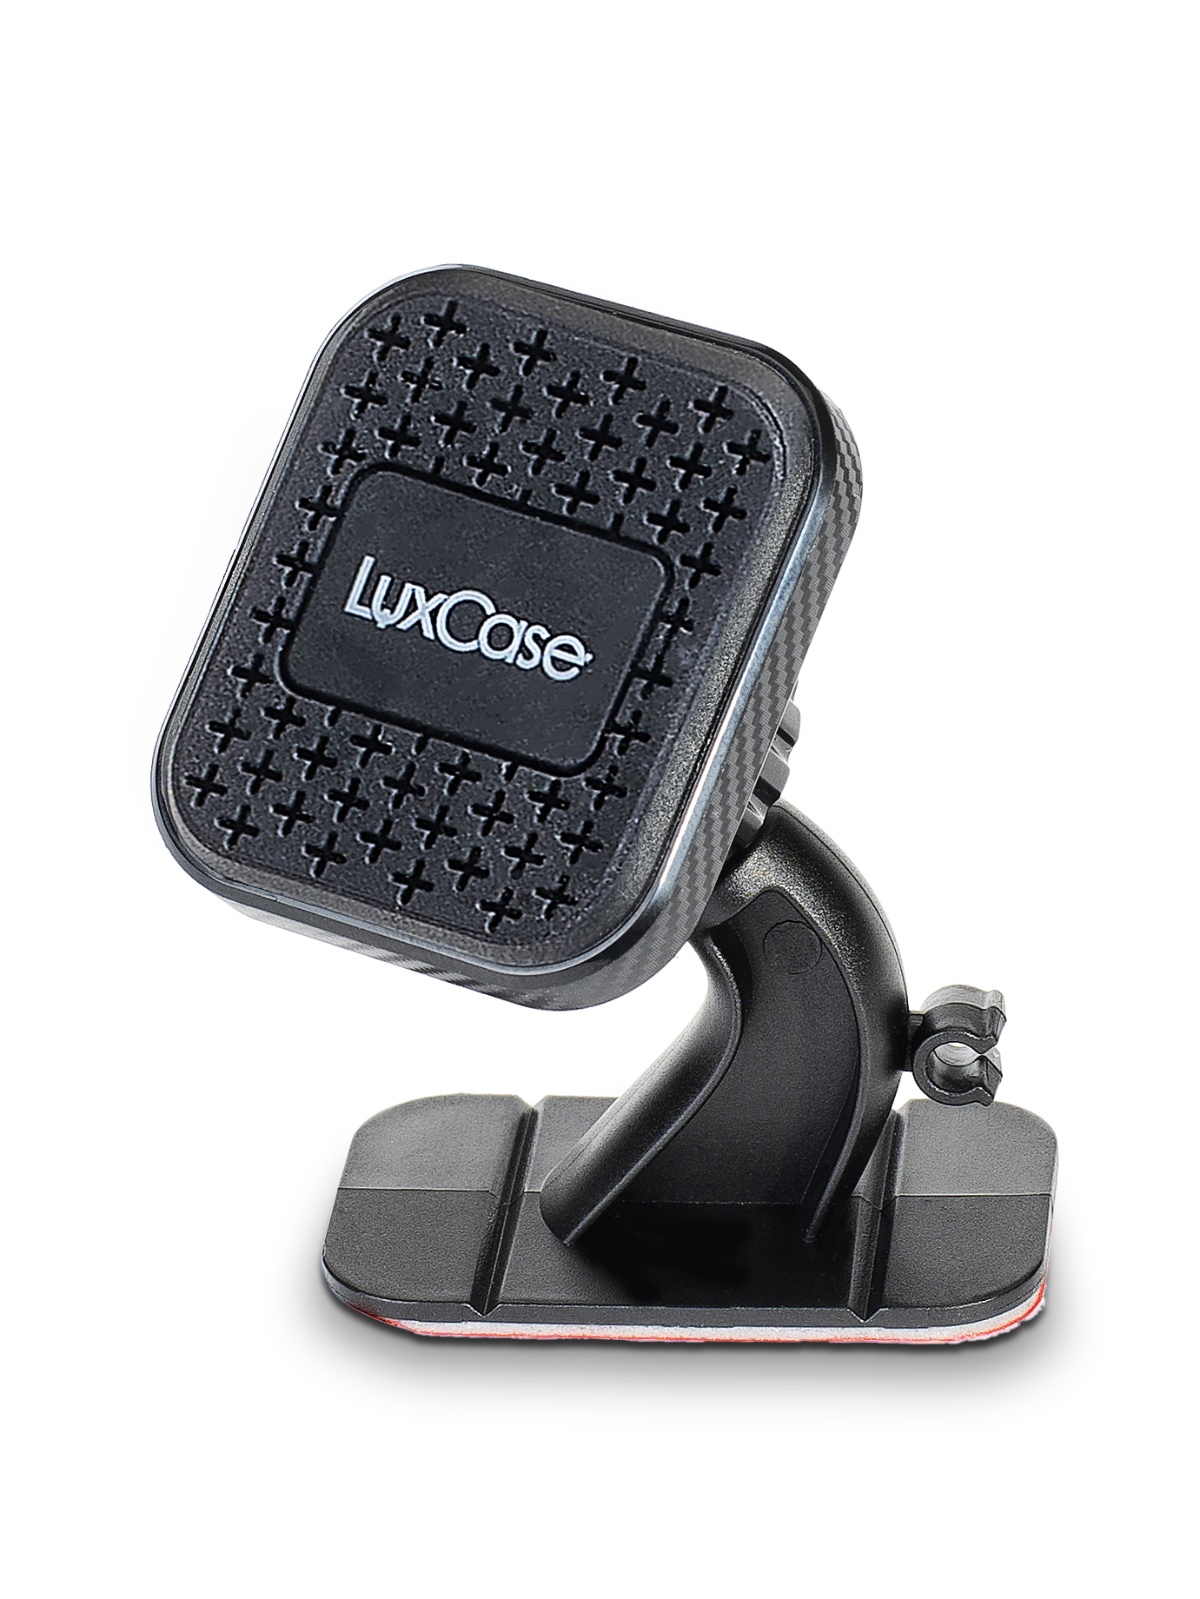 Автомобильный магнитный держатель телефона с клейкой основой CH-M 104 LuxCase